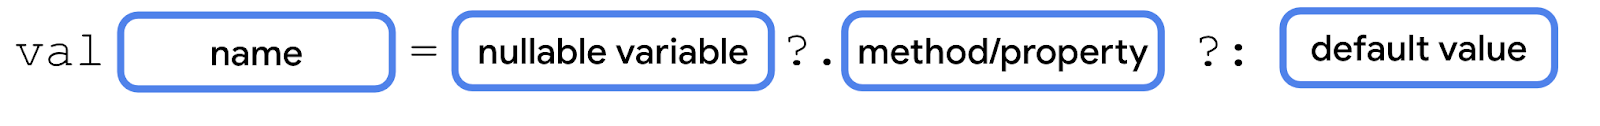 Schéma représentant le mot clé val suivi d'un bloc de nom, d'un signe égal, d'un bloc de variables nullables, d'un point d'interrogation, d'un point, d'un bloc de méthode ou de propriété, d'un point d'interrogation, d'un deux-points et d'un bloc de valeur par défaut